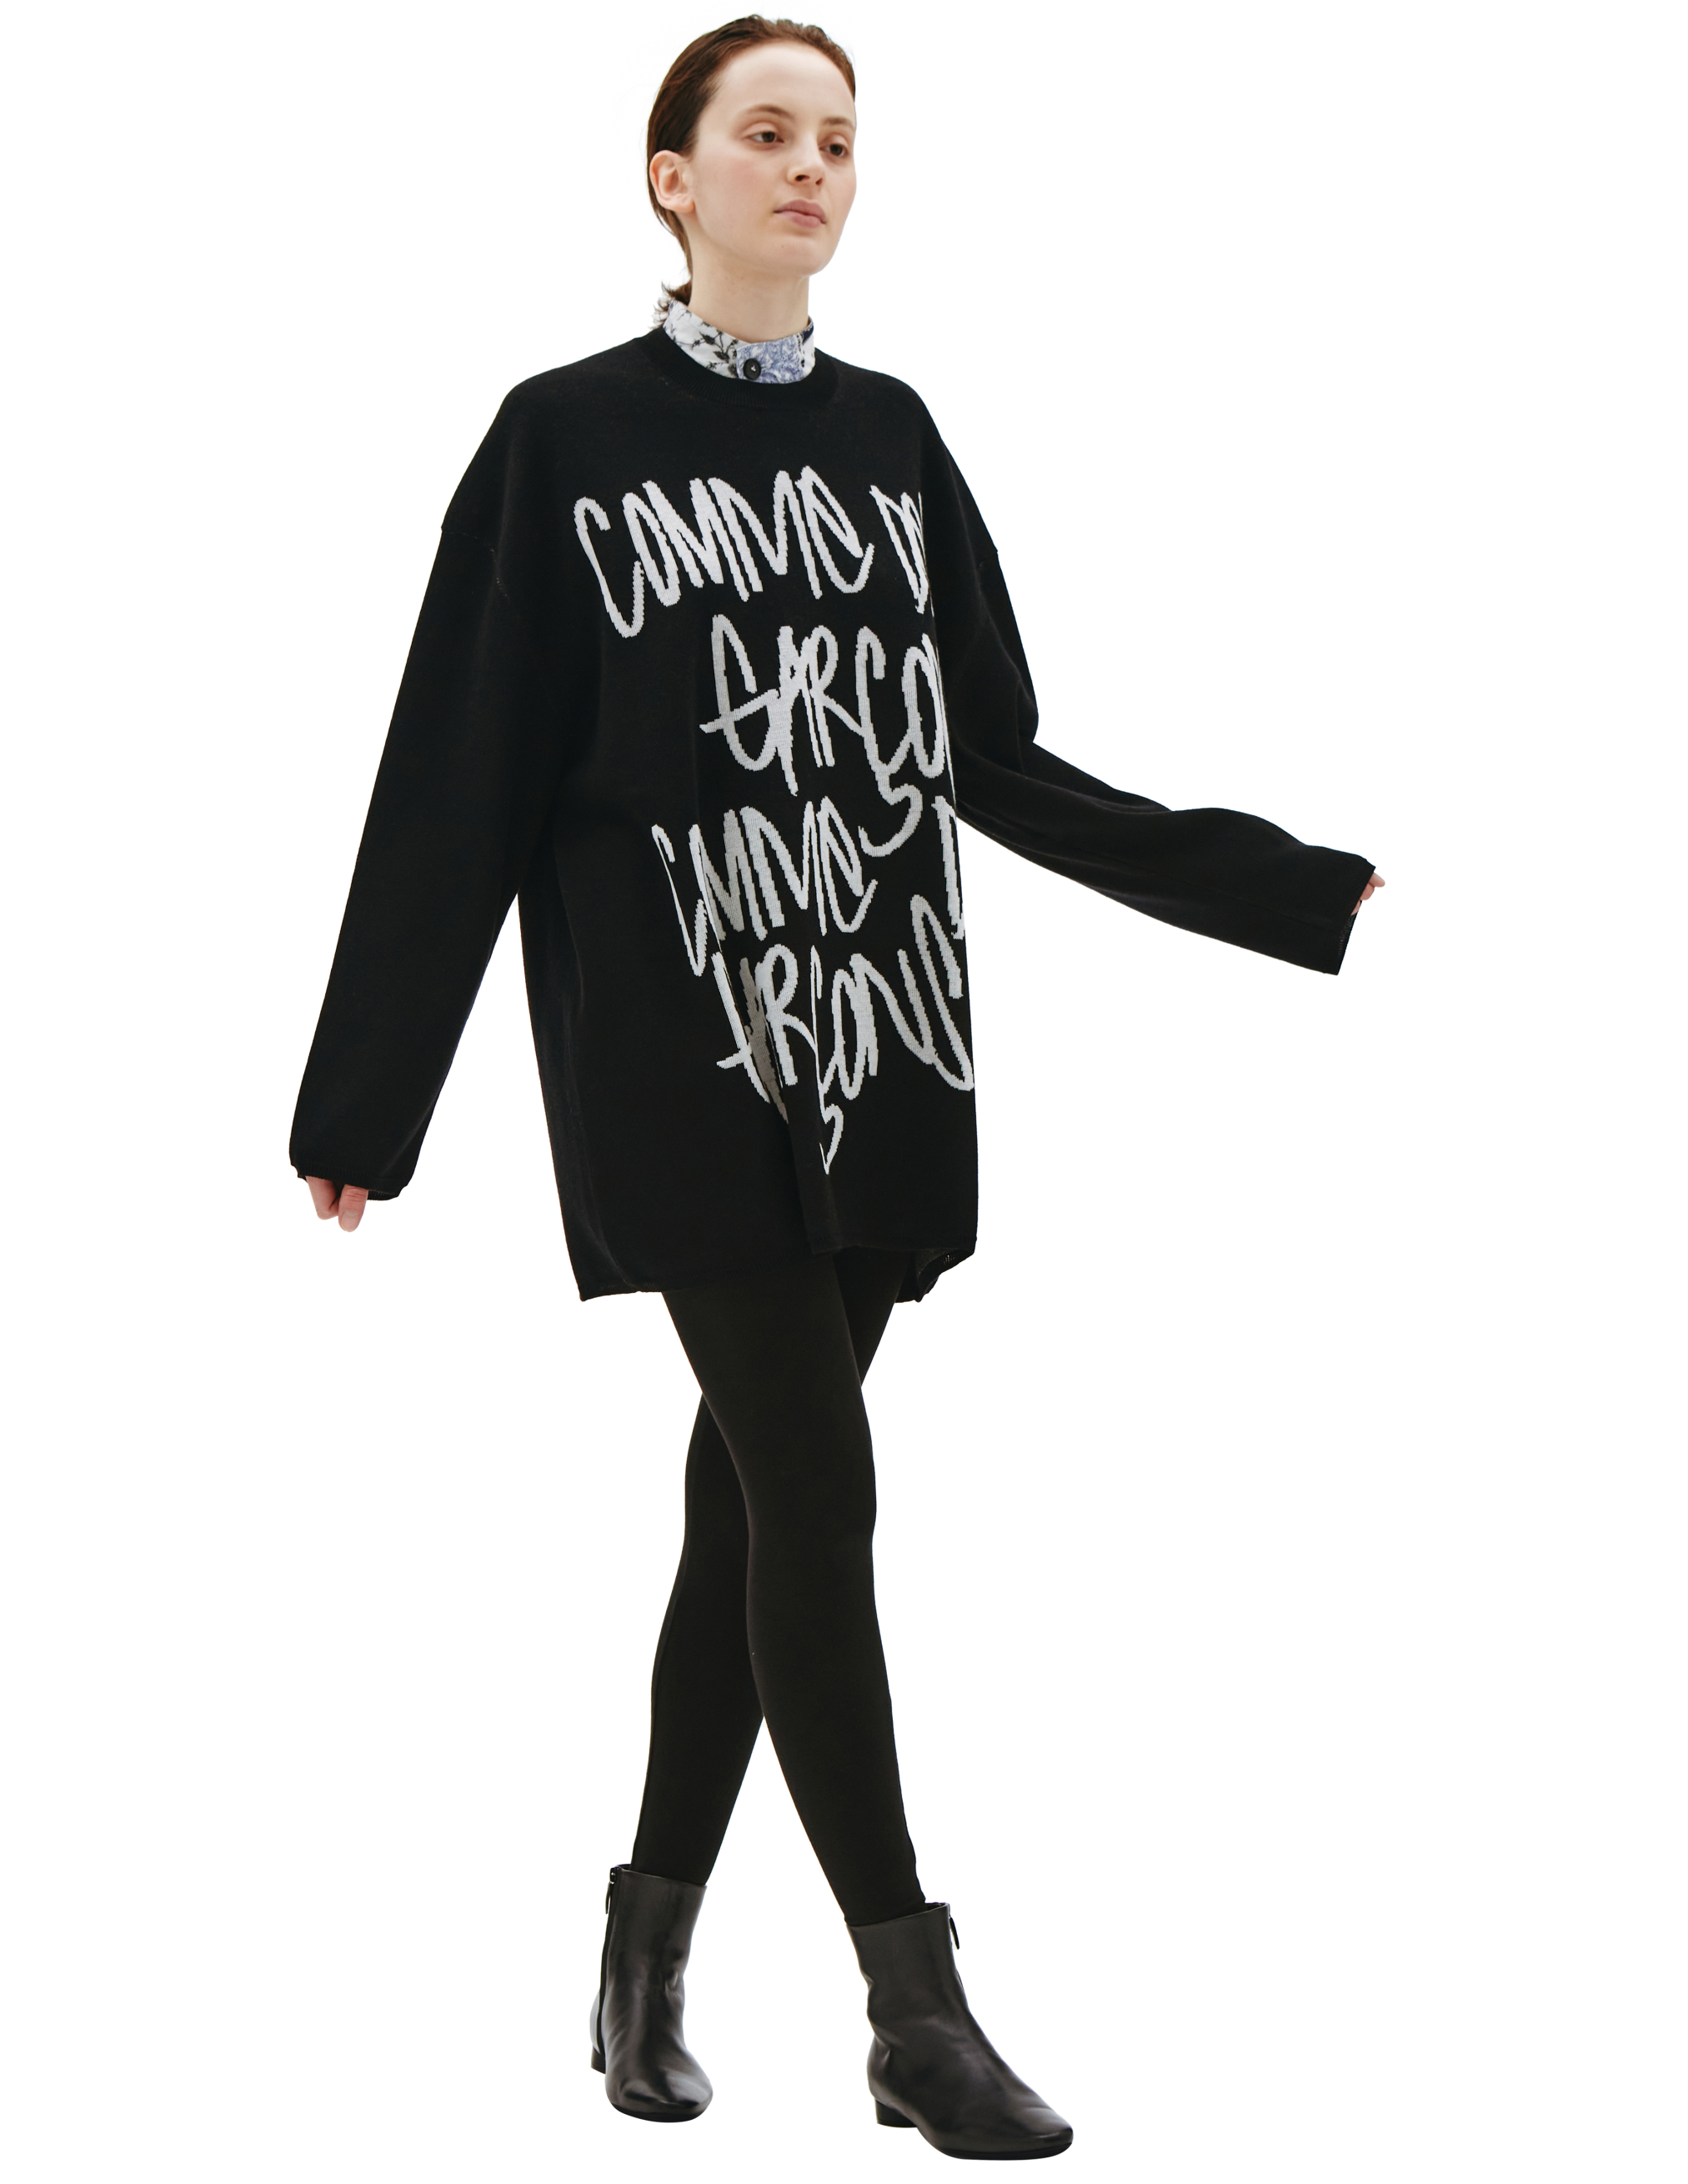 Шерстяной свитер с контрастным логотипом Comme des Garcons GI-N017-051-1, размер S;M - фото 1